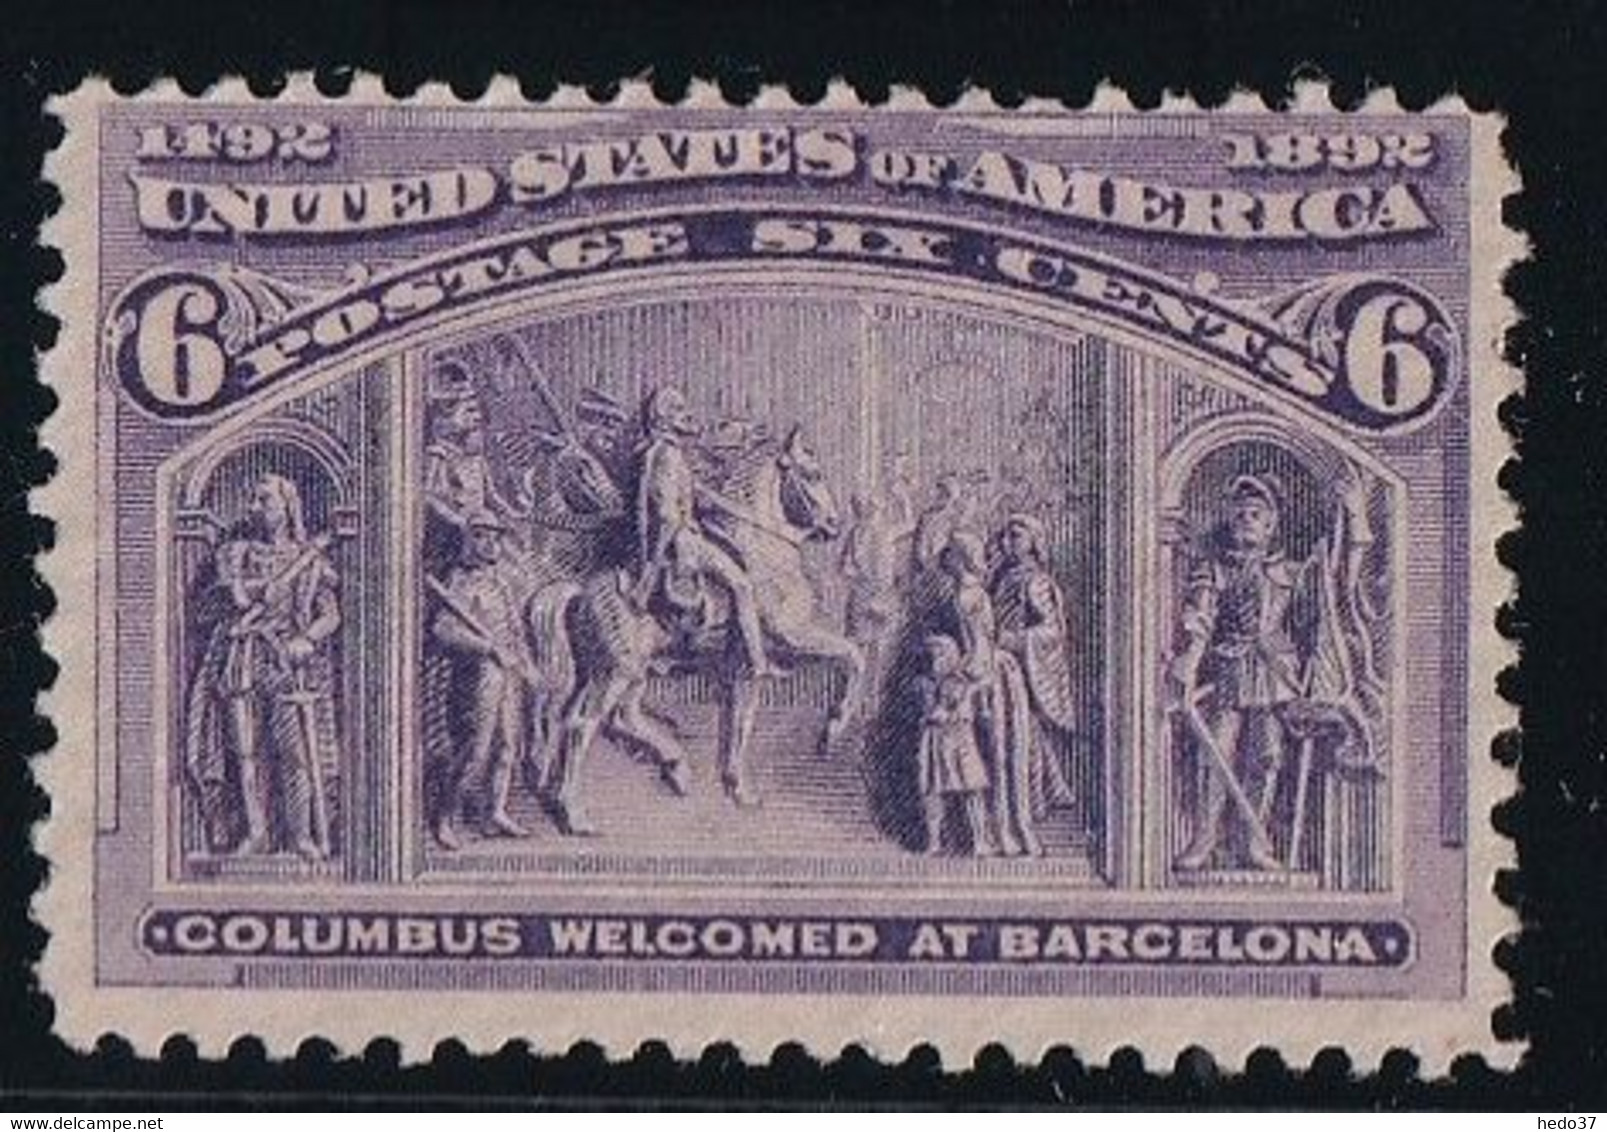 Etats Unis N°86 - Neuf Sans Gomme - TB - Unused Stamps